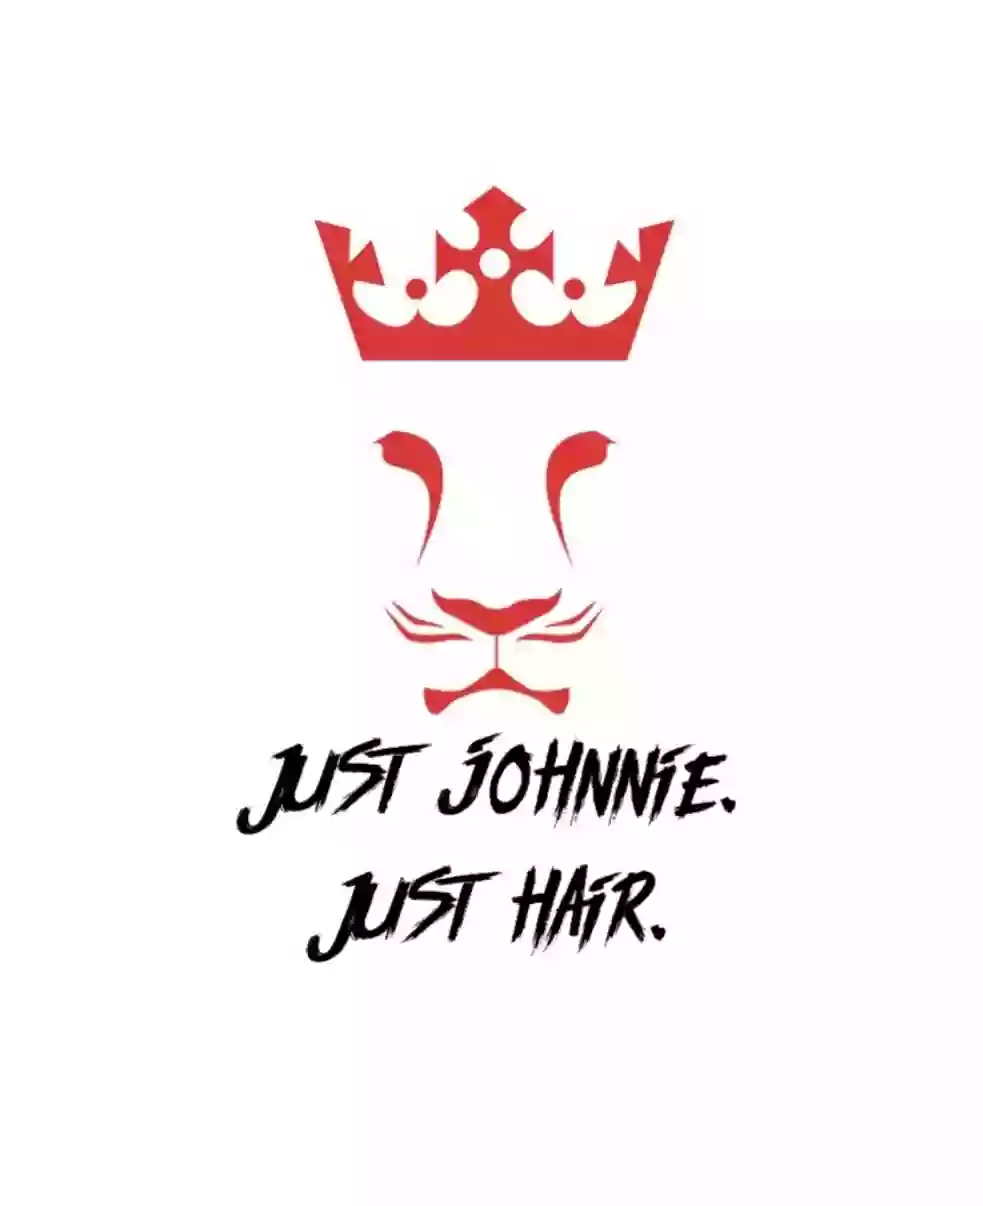 Just Johnnie. Just Hair.